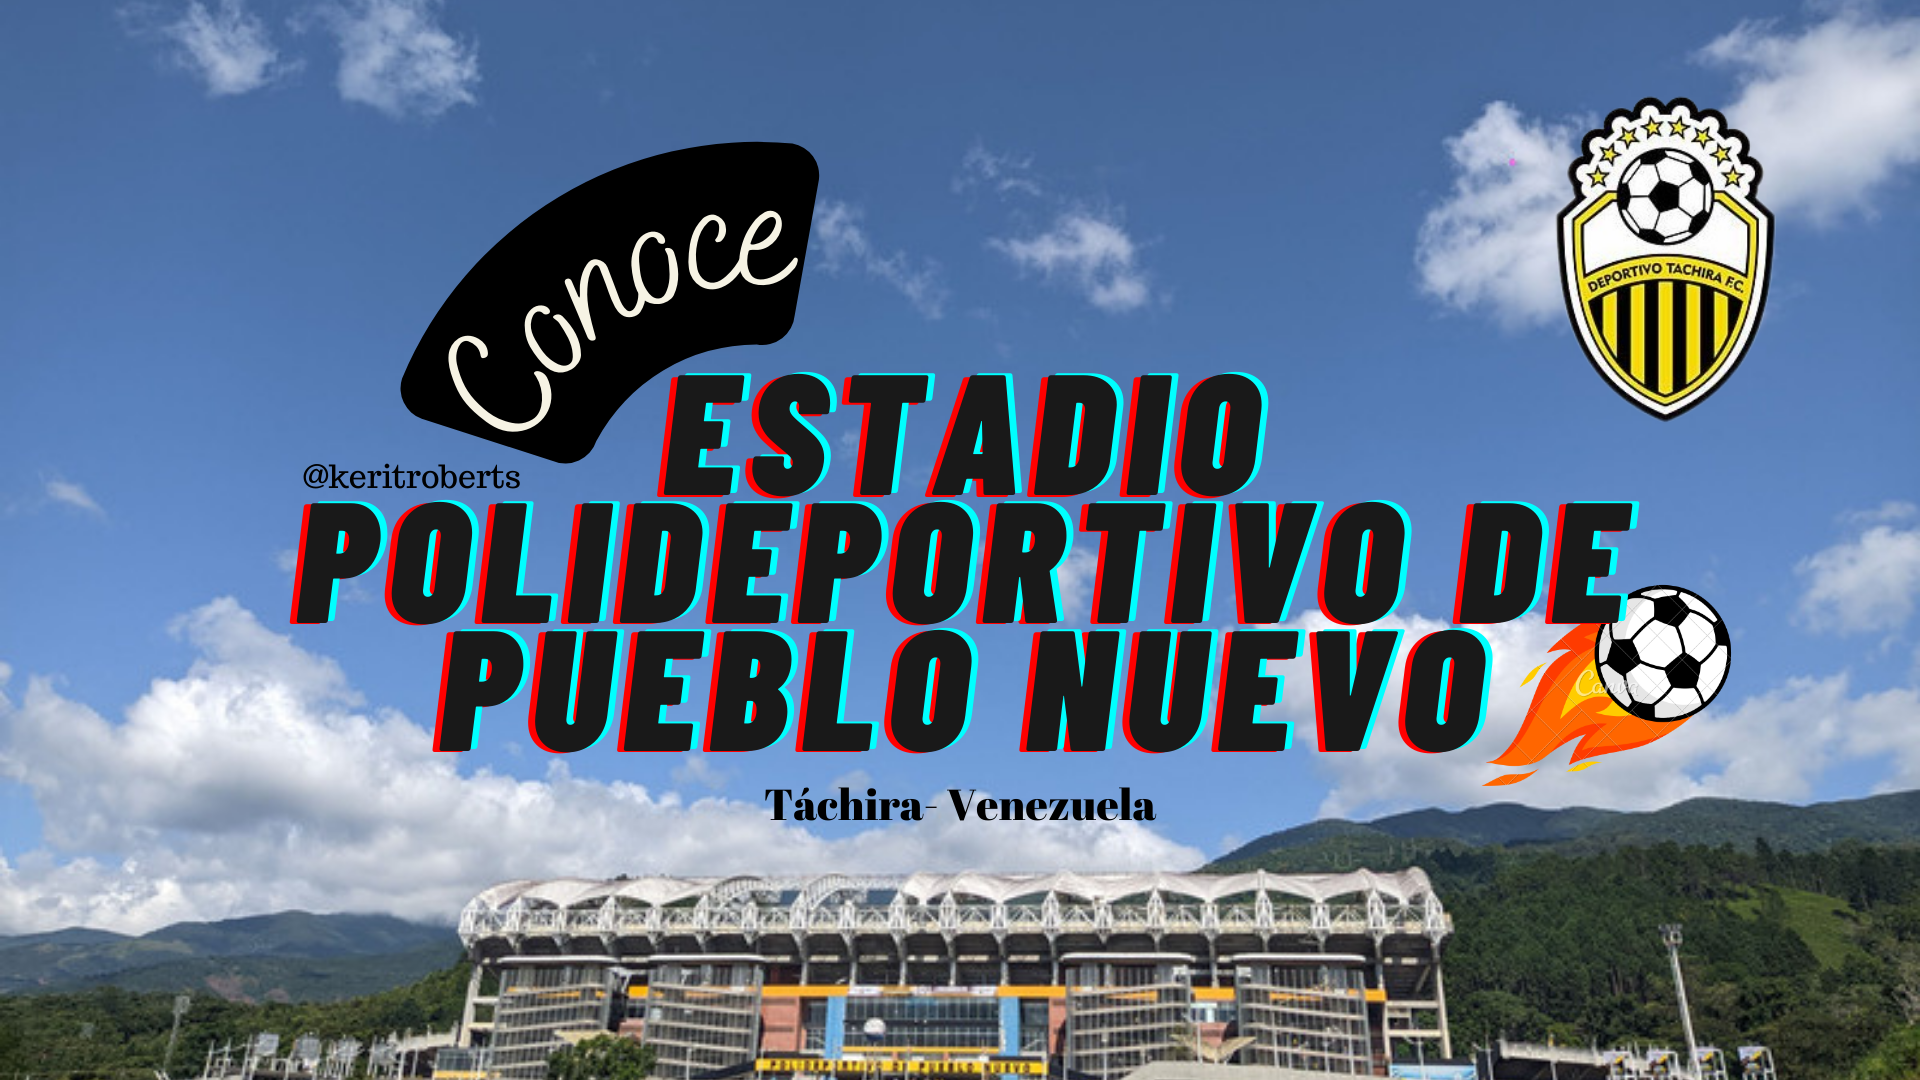 Estadio_Polideportivo_de_Pueblo_Nuevo_tachira_venezuela.png